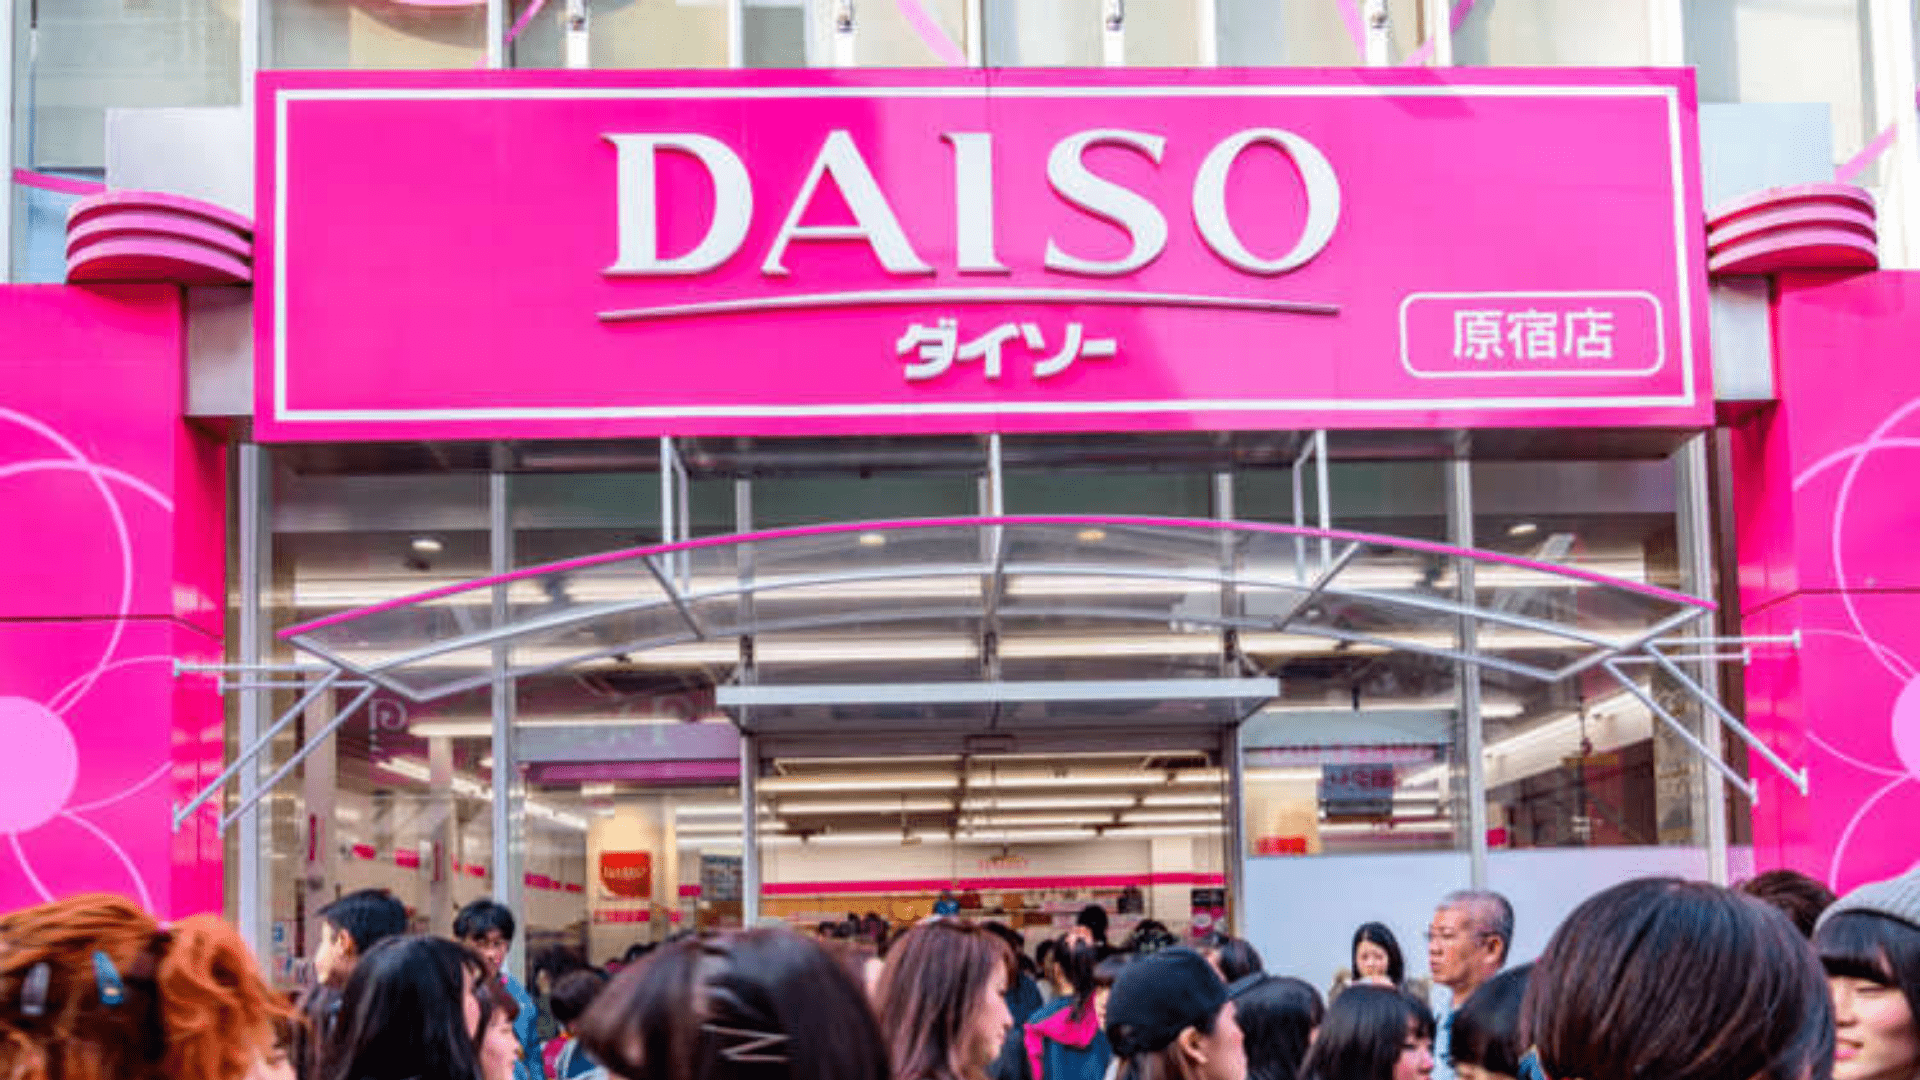 लोकप्रिय जापानी १००-येन स्टोर Daiso अब एक ऑनलाइन दुकान है